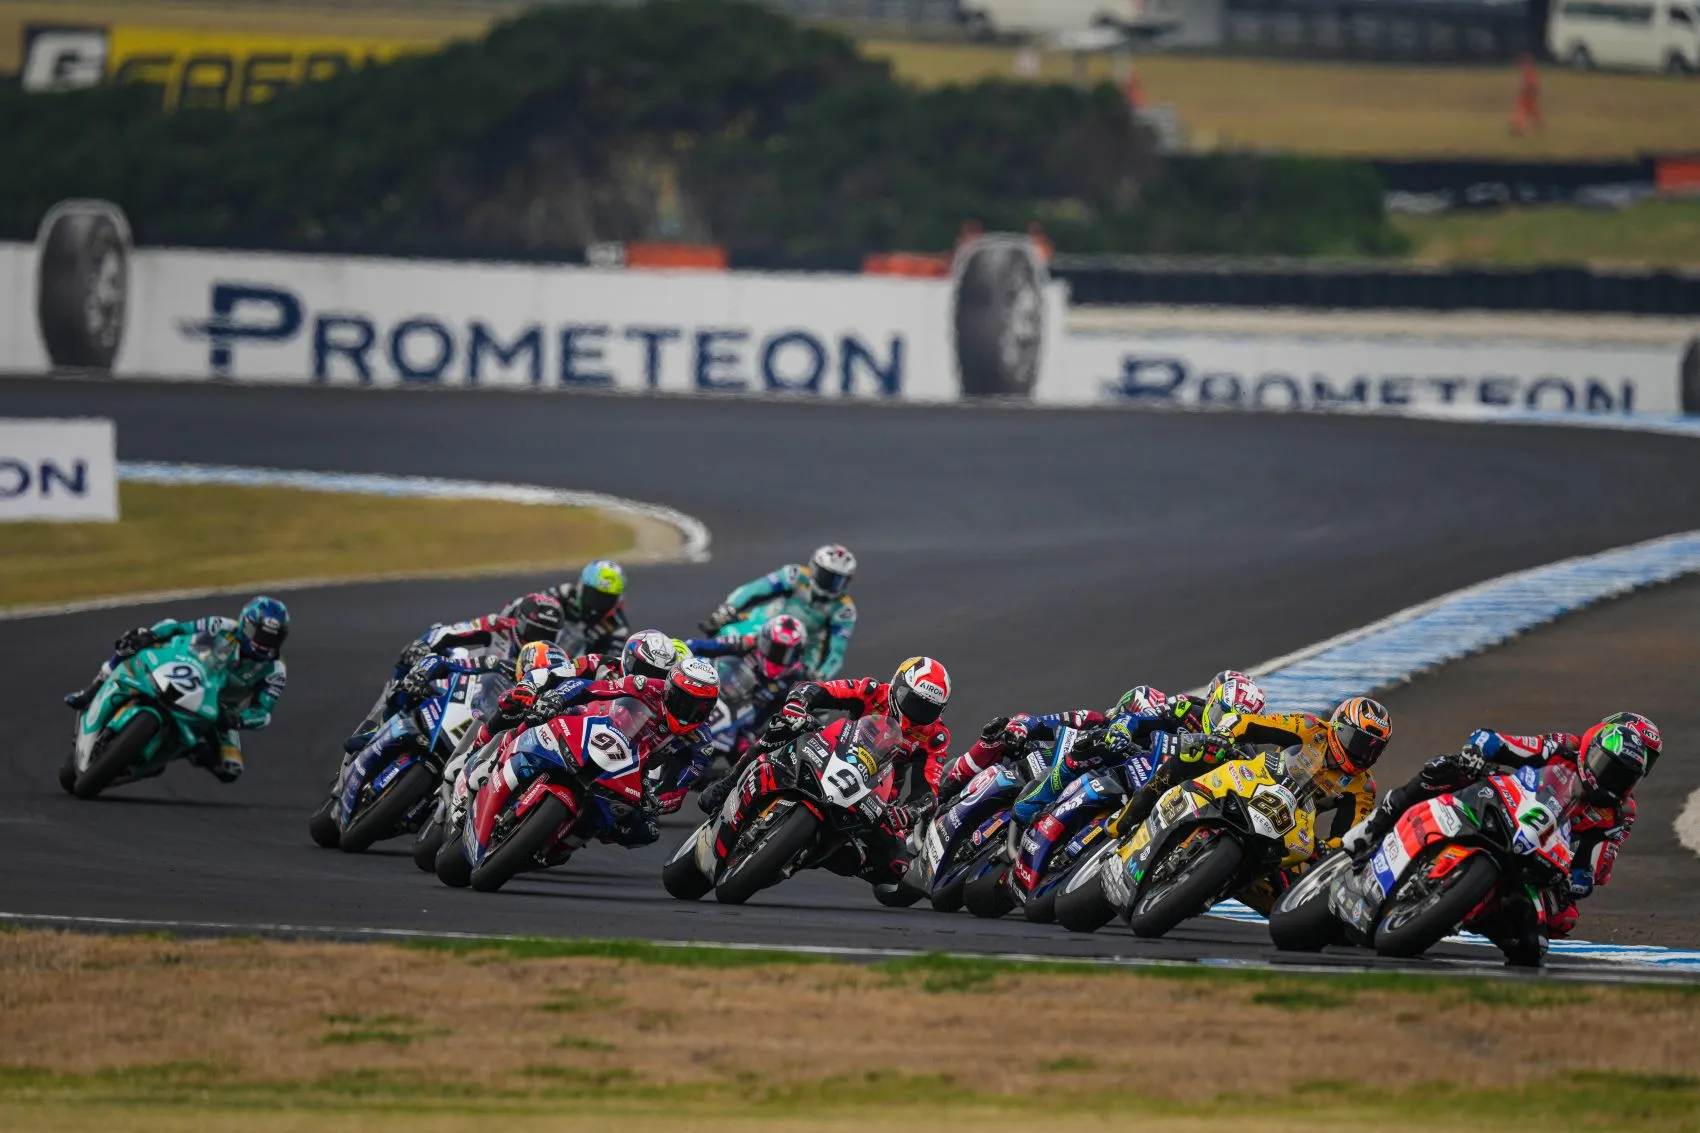 Az ausztráliai Superbike-világbajnokság fordulójában meglepően gyenge teljesítményt nyújtott az egyik gyártó